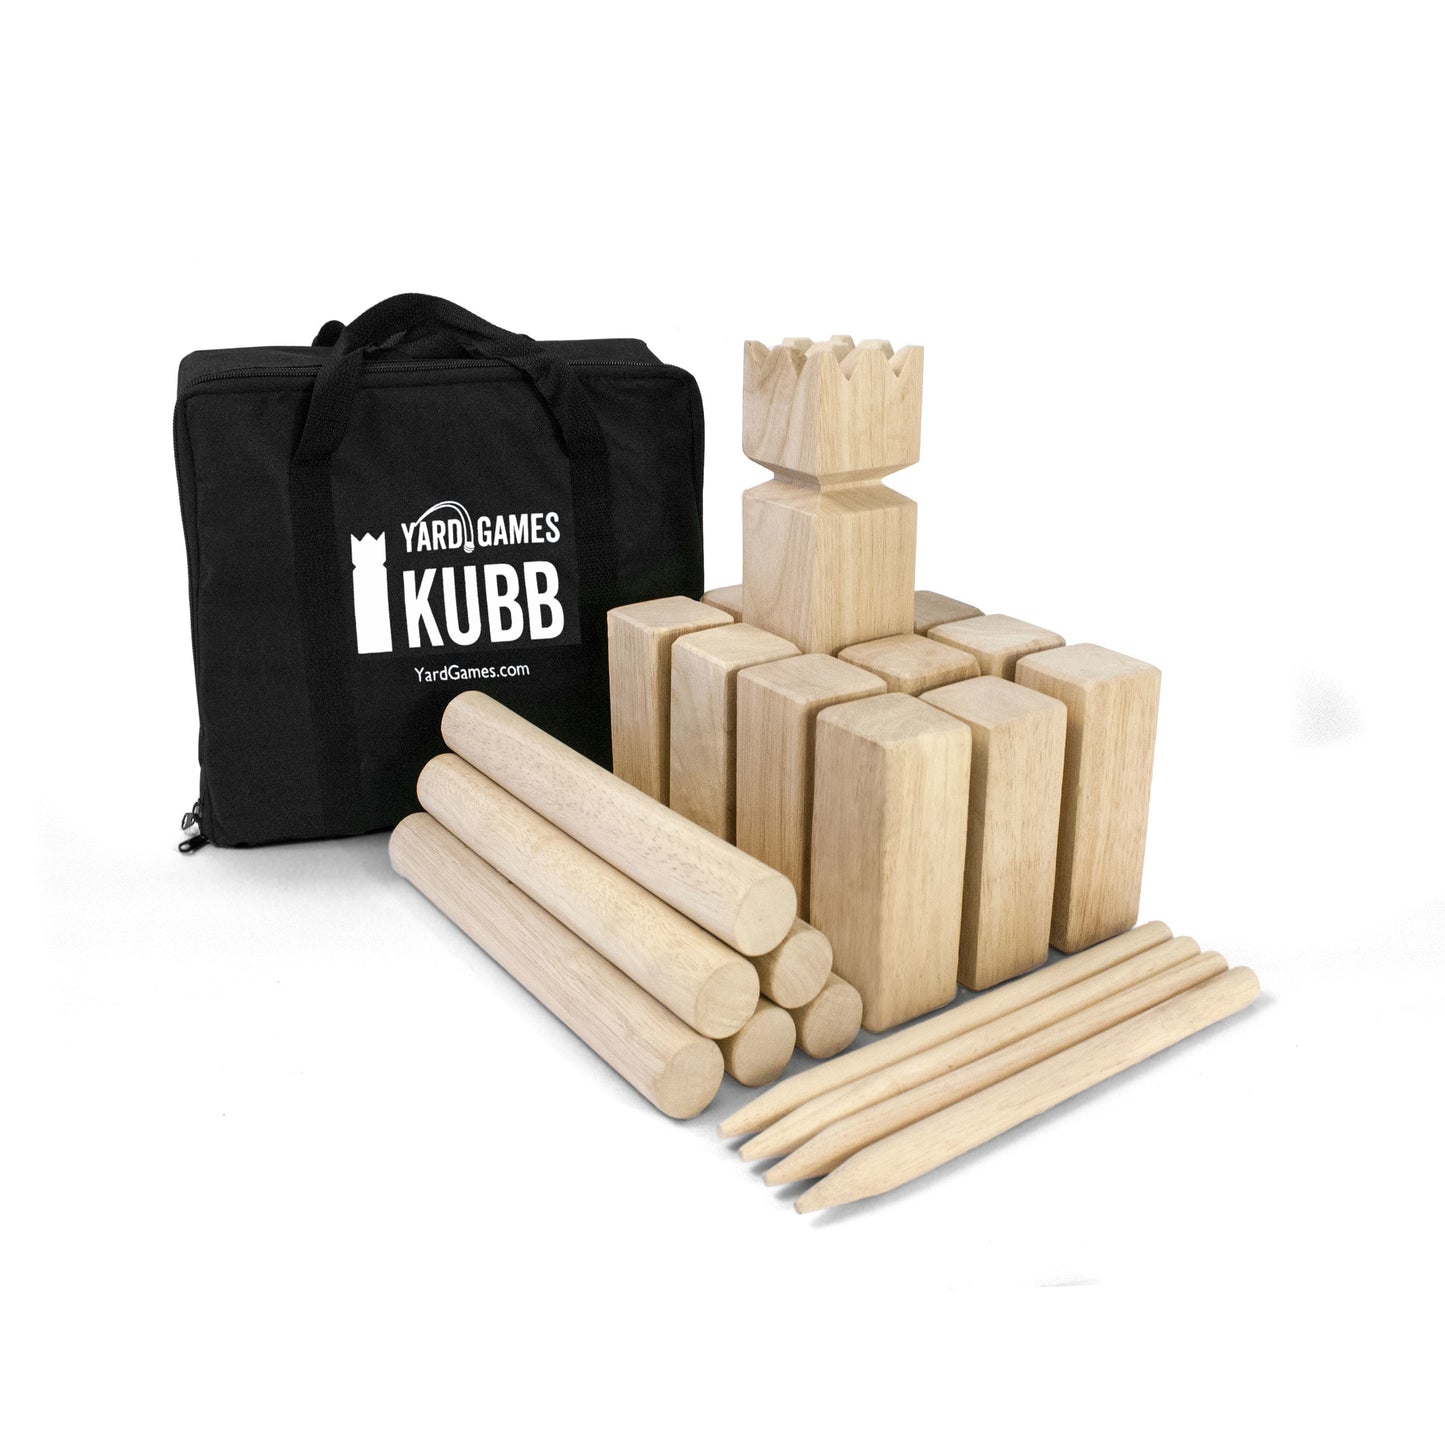 Kubb Game Set